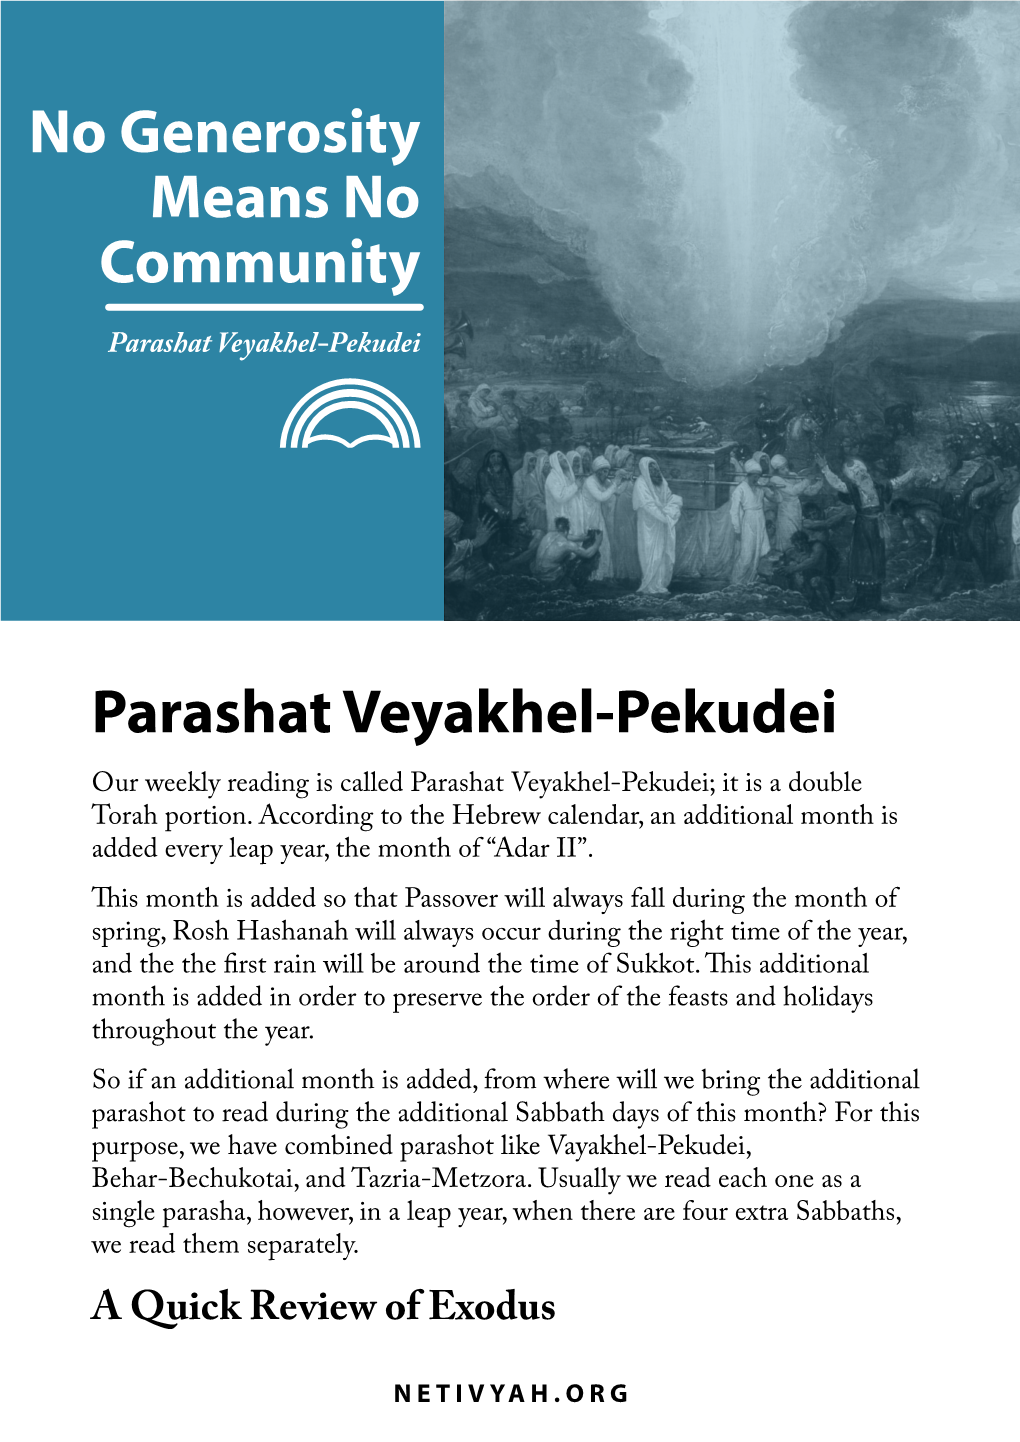 Parashat Veyakhel-Pekudei